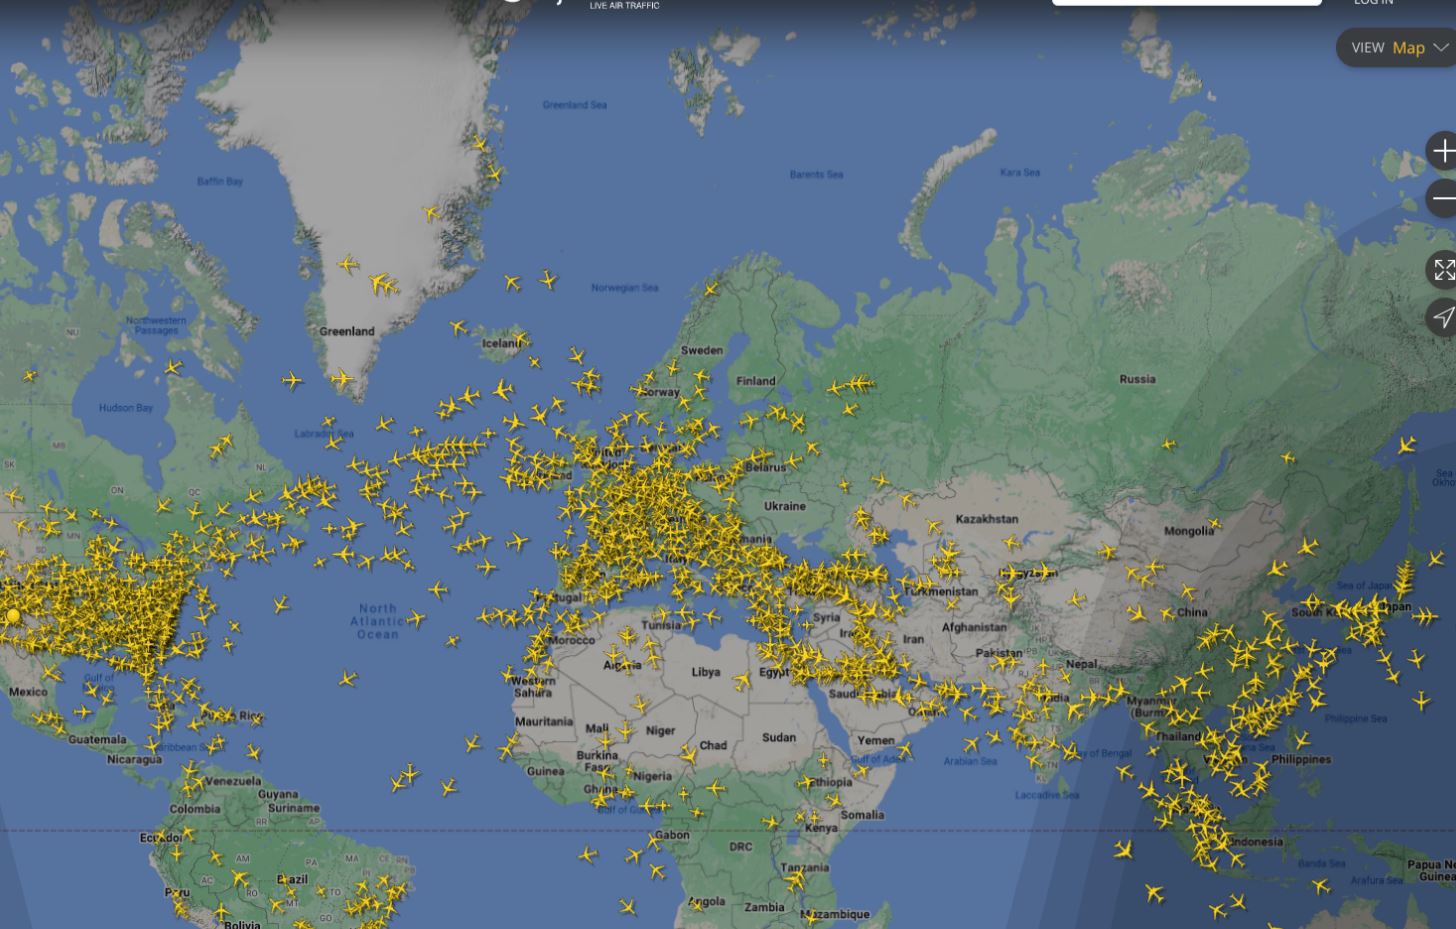 En illustrasjon. Et kart over verden med små gule fly plassert rundt på hele kartet